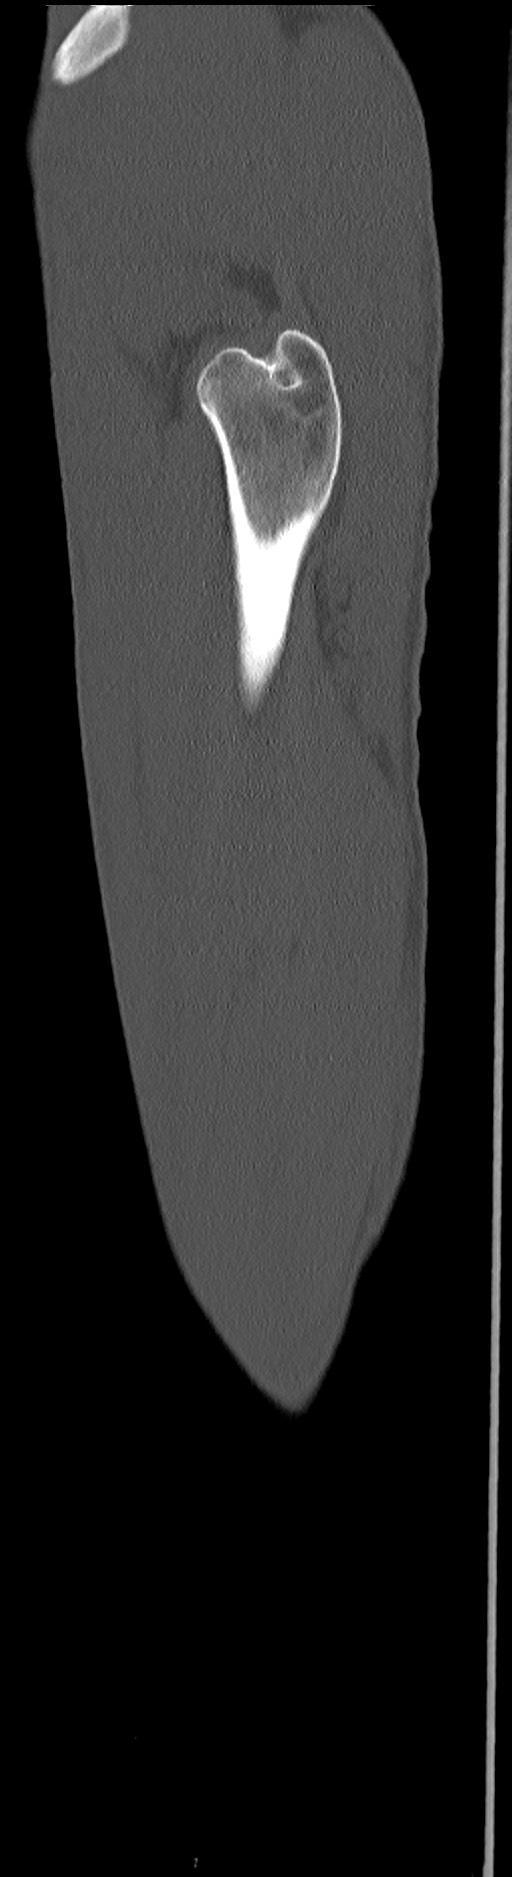 Chronic osteomyelitis (with sequestrum) (Radiopaedia 74813-85822 C 17).jpg